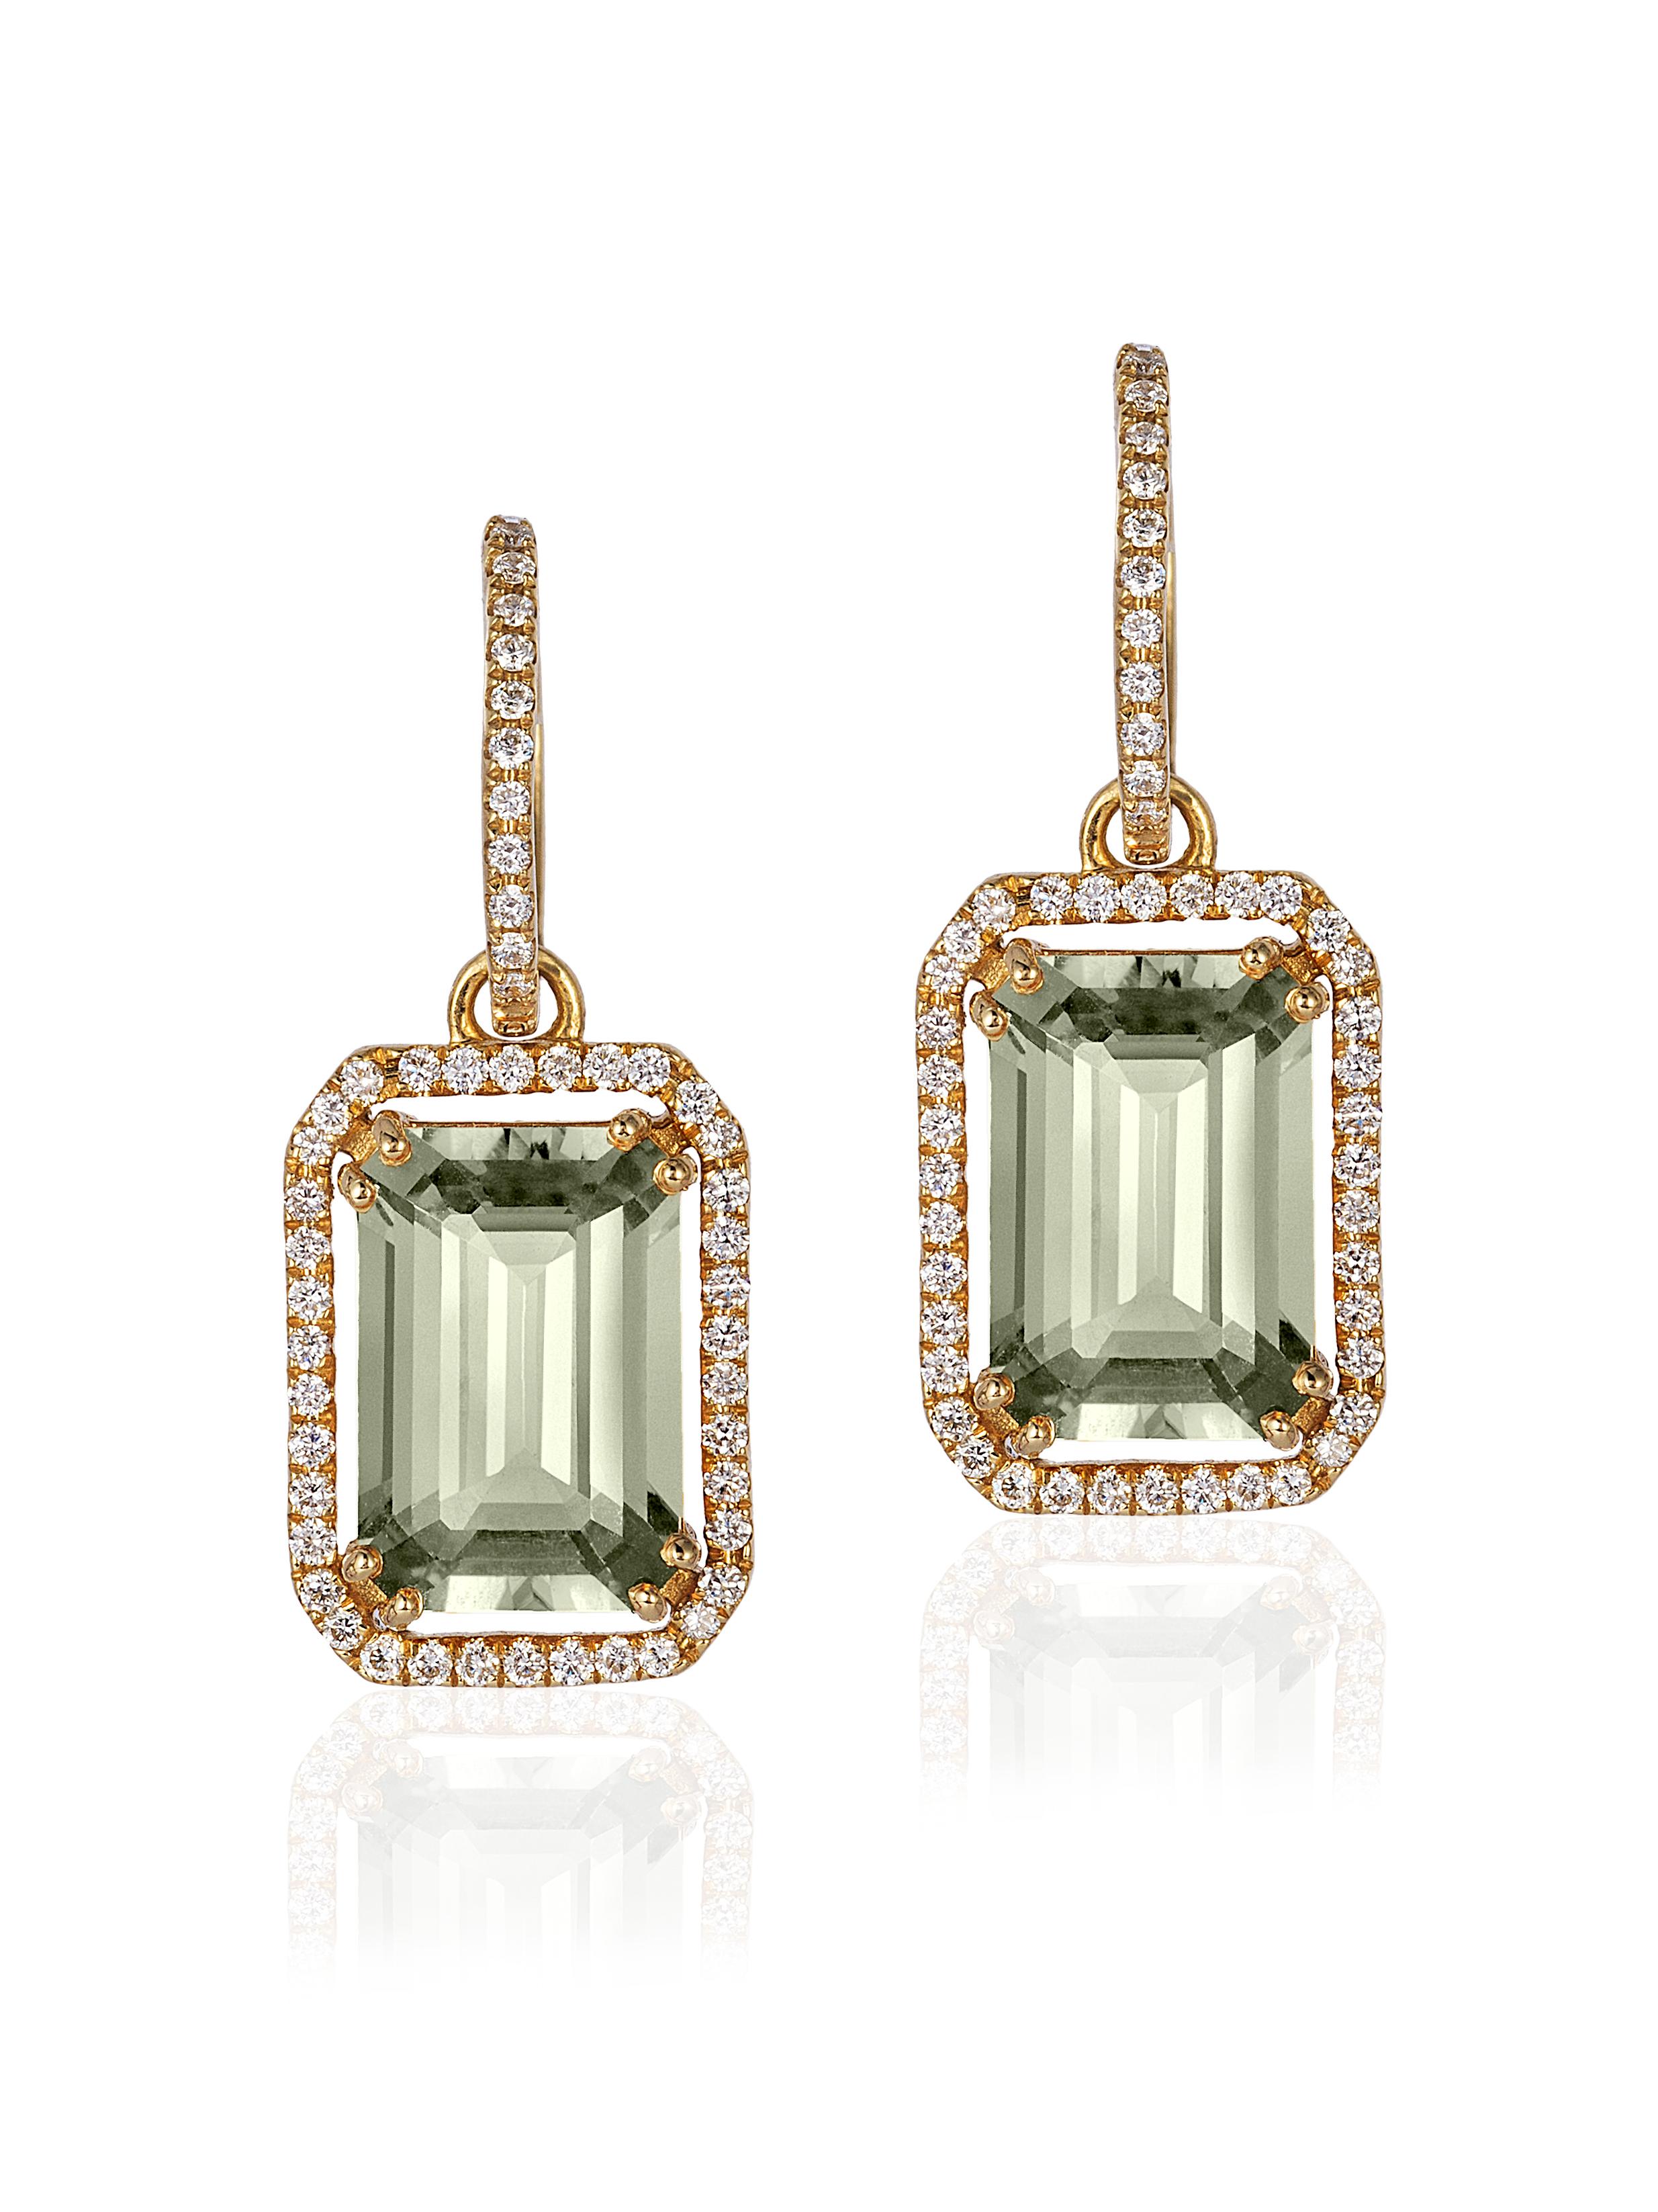 Ohrringe mit Prasiolith-Schliff und Diamantbesatz aus 18 Karat, aus der 'Gossip' Kollektion
Bügel können separat getragen werden 
Steingröße: 12 x 8 mm 
Diamanten: G-H / VS, Ca. Wt:  0.40 Karat